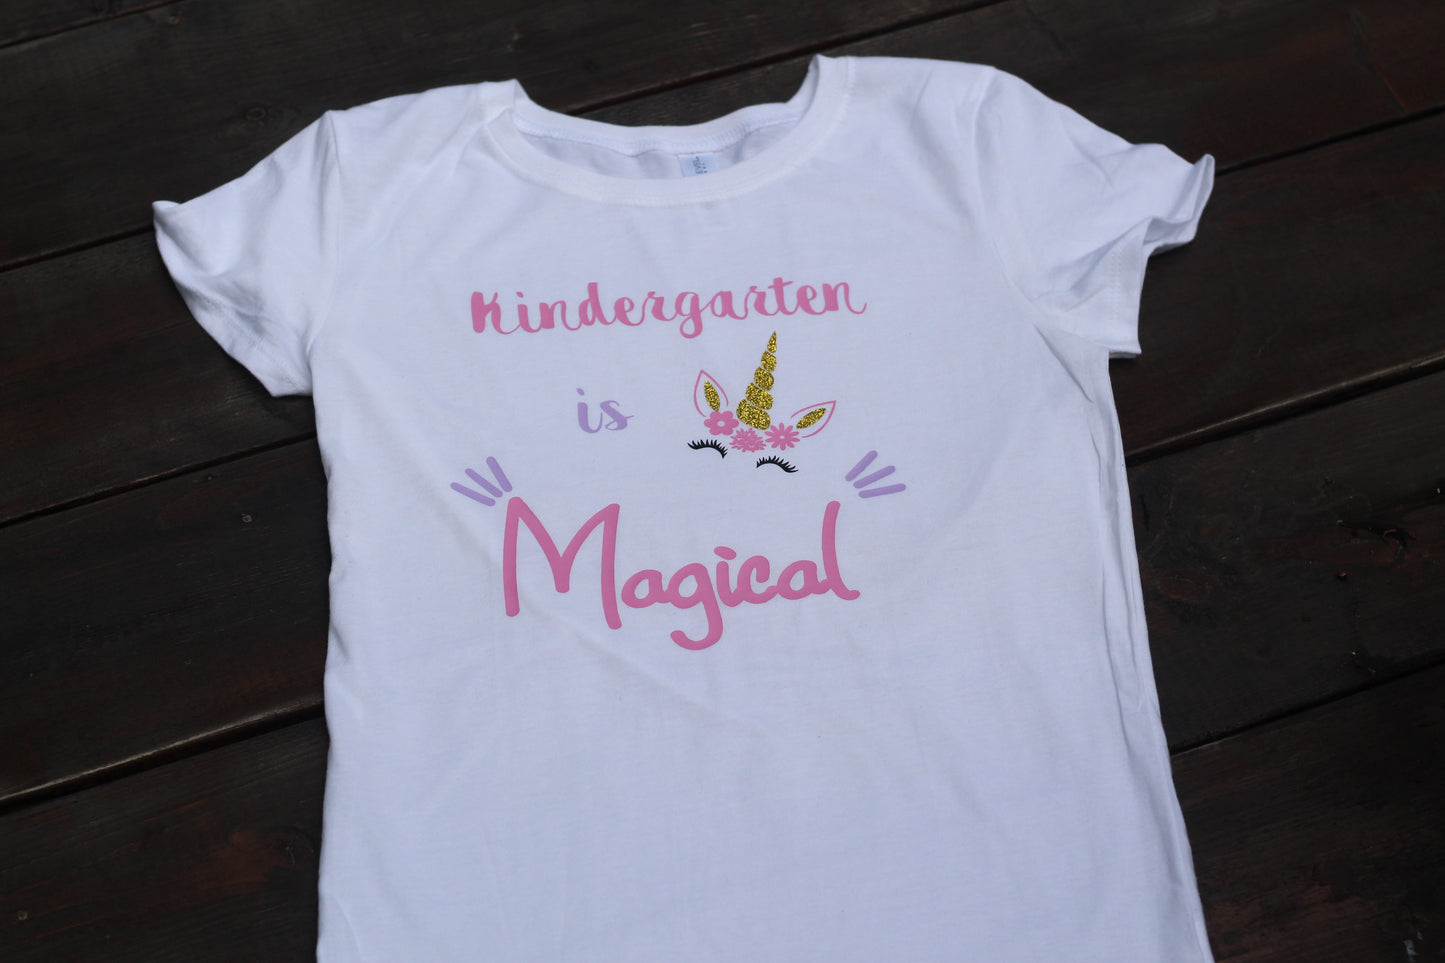 Kindergarten is Magical